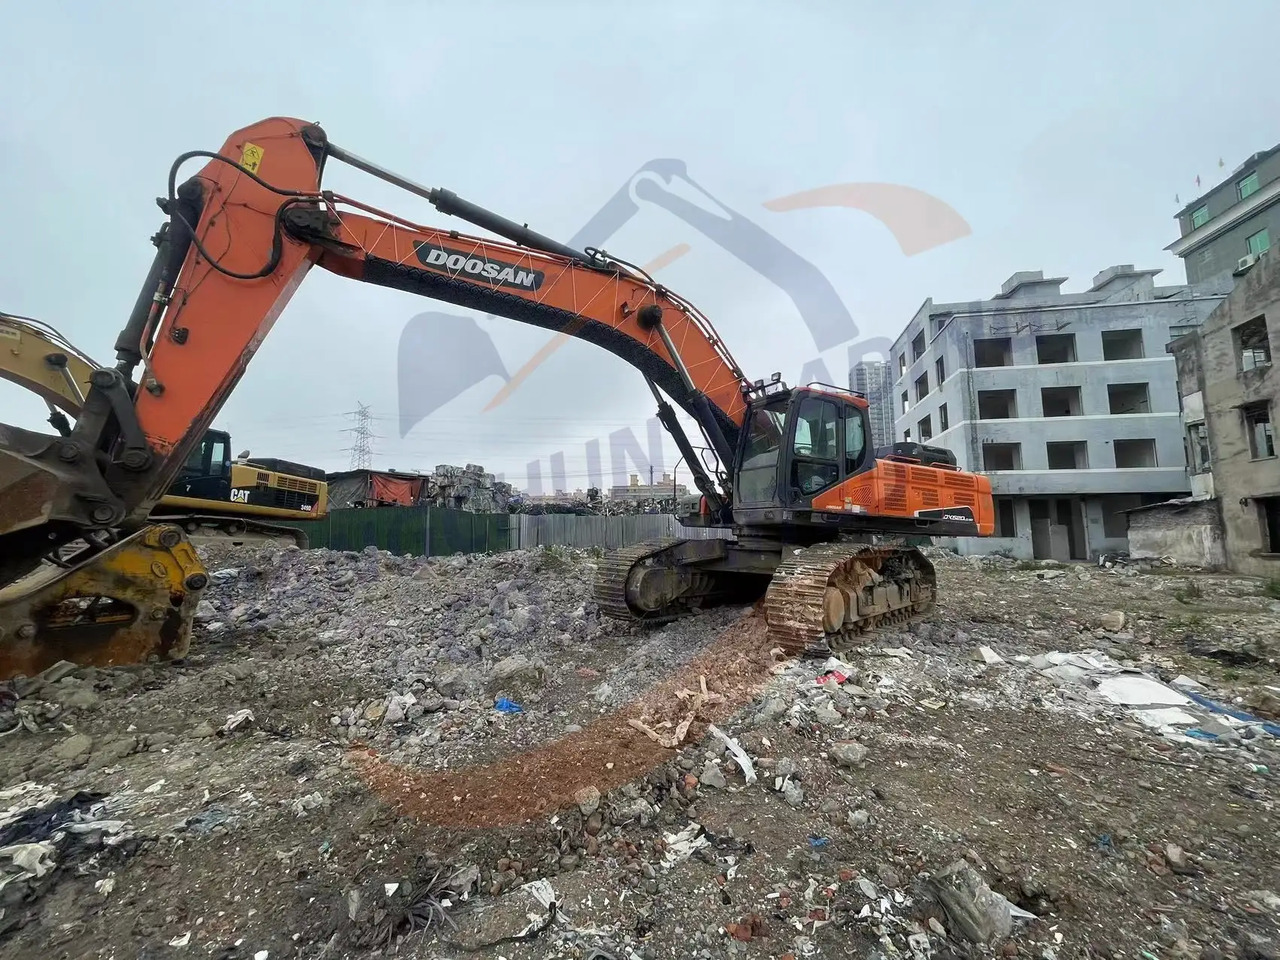 크롤러 굴삭기 Low running hours Used Doosan excavator DX520LC-9C in good condition for sale : 사진 5